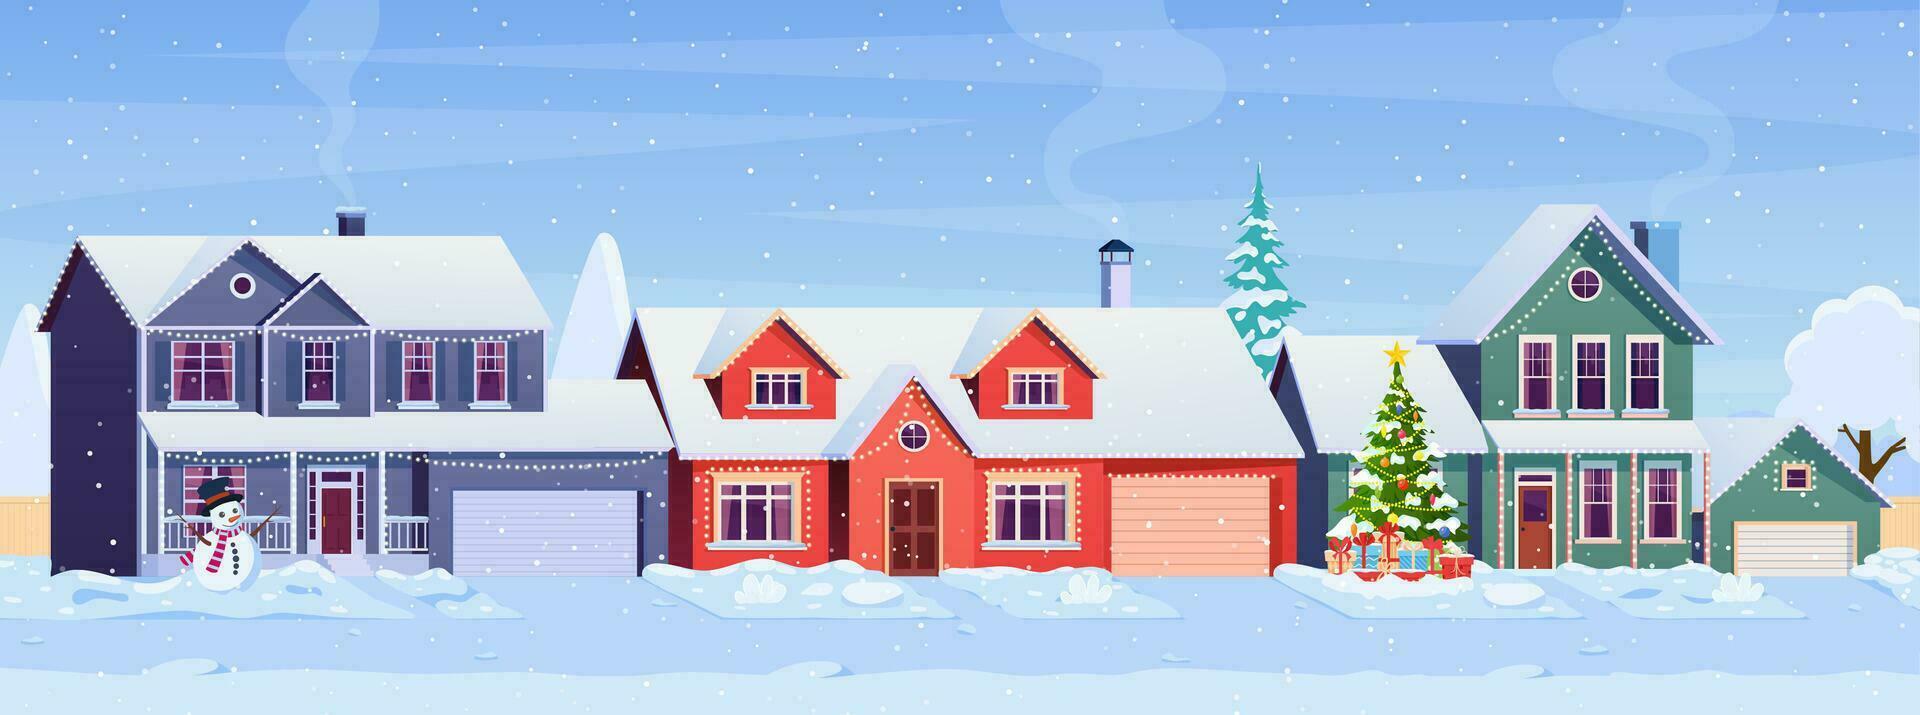 Wohn Häuser mit Weihnachten Dekoration beim Tag. Karikatur Winter Landschaft Straße mit Schnee auf Dächer und Urlaub Girlanden, Weihnachten Baum, Schneemann. Vektor Illustration